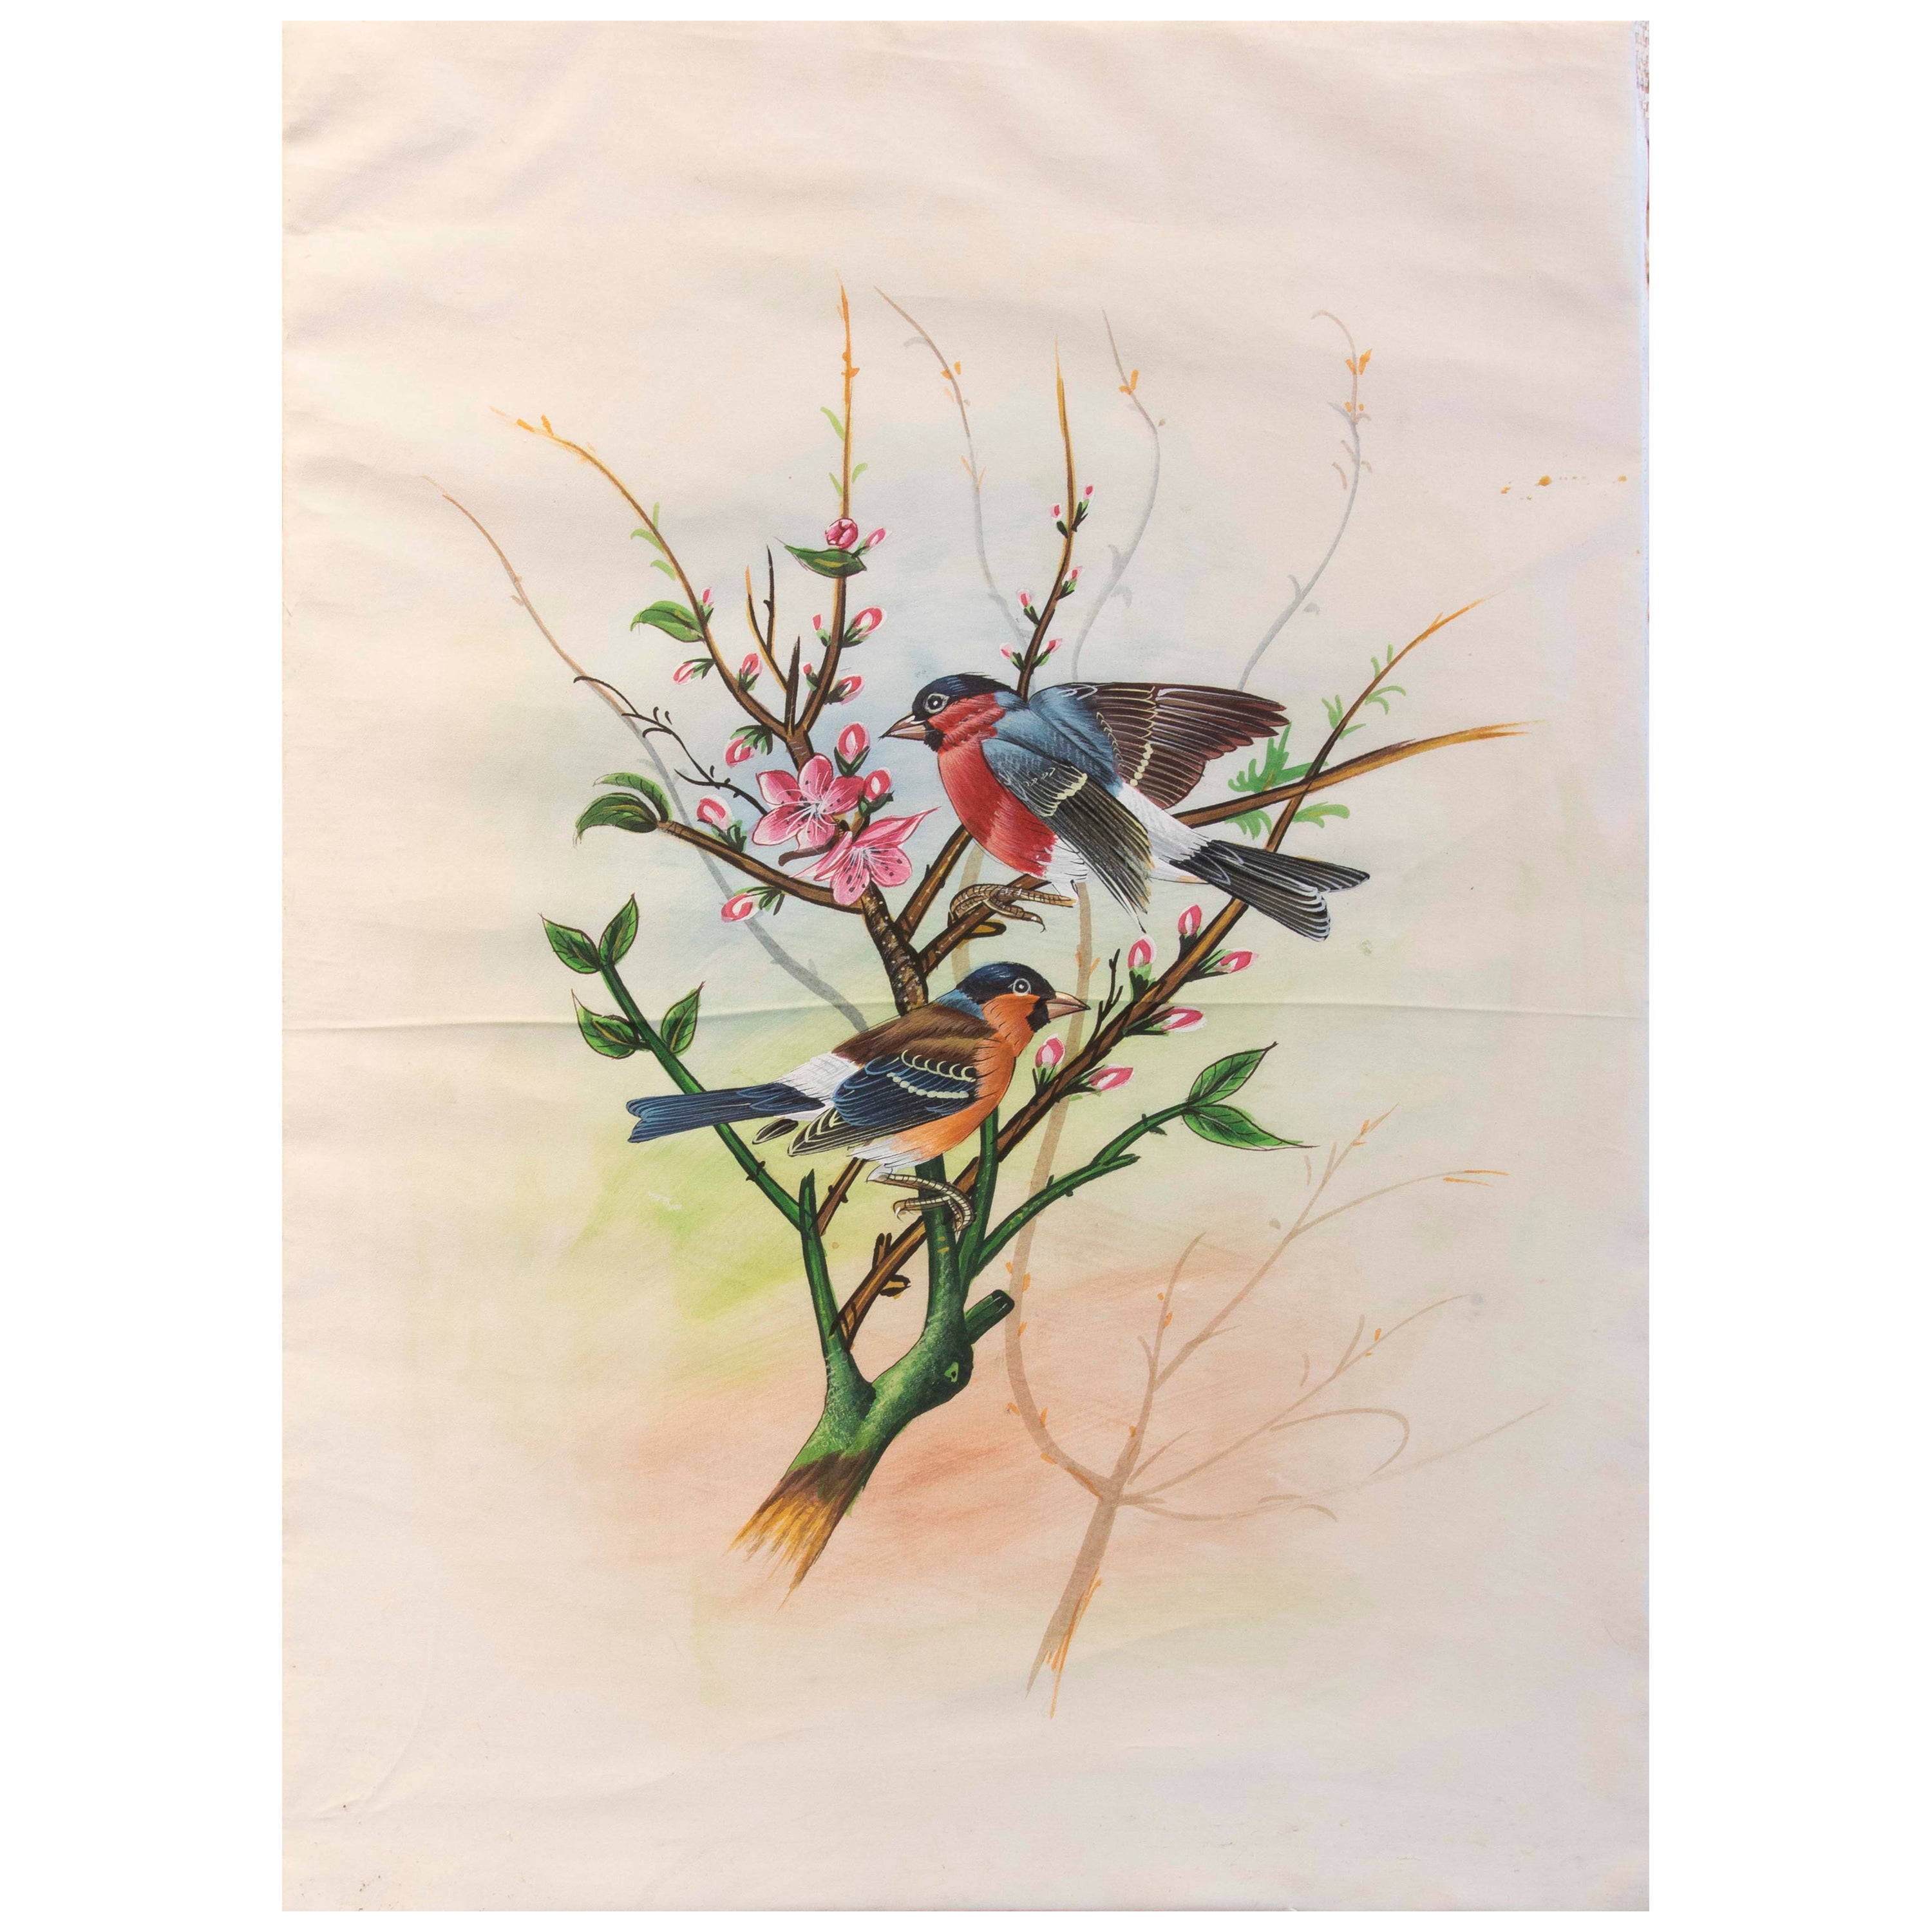 1970s Picture of B on Branch with Flowers Painted on Silk (Photo de B sur une branche avec des fleurs peinte sur de la soie) 